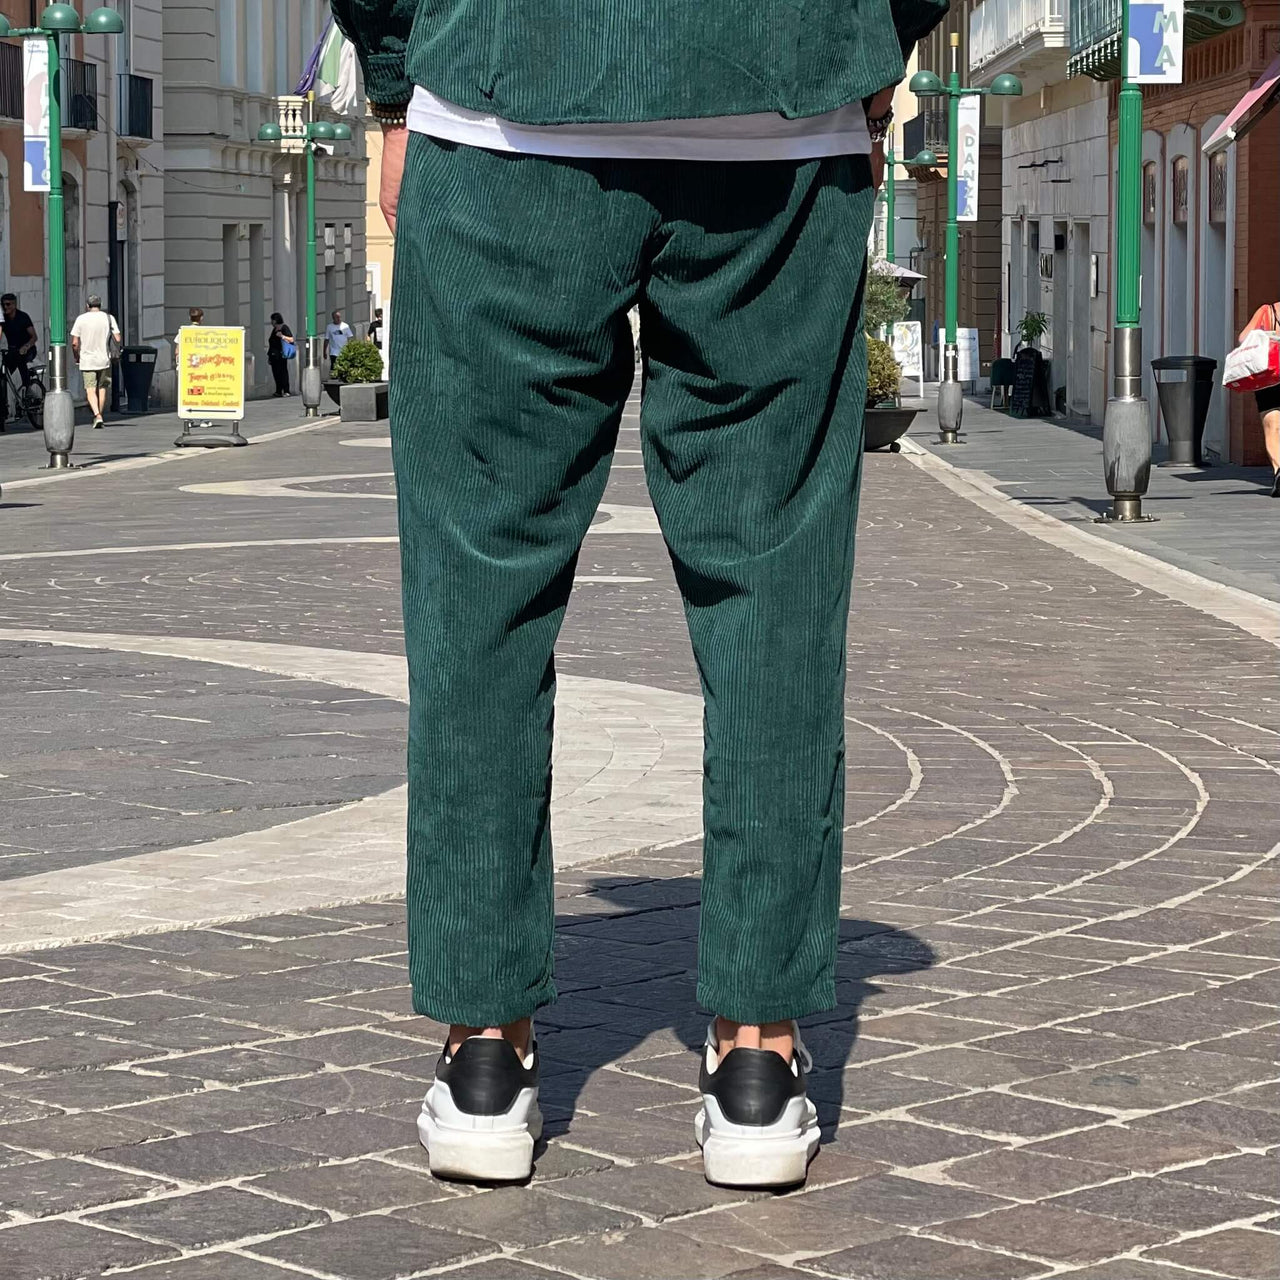 Coordinato in velluto verde Gucci - FLAG STORE